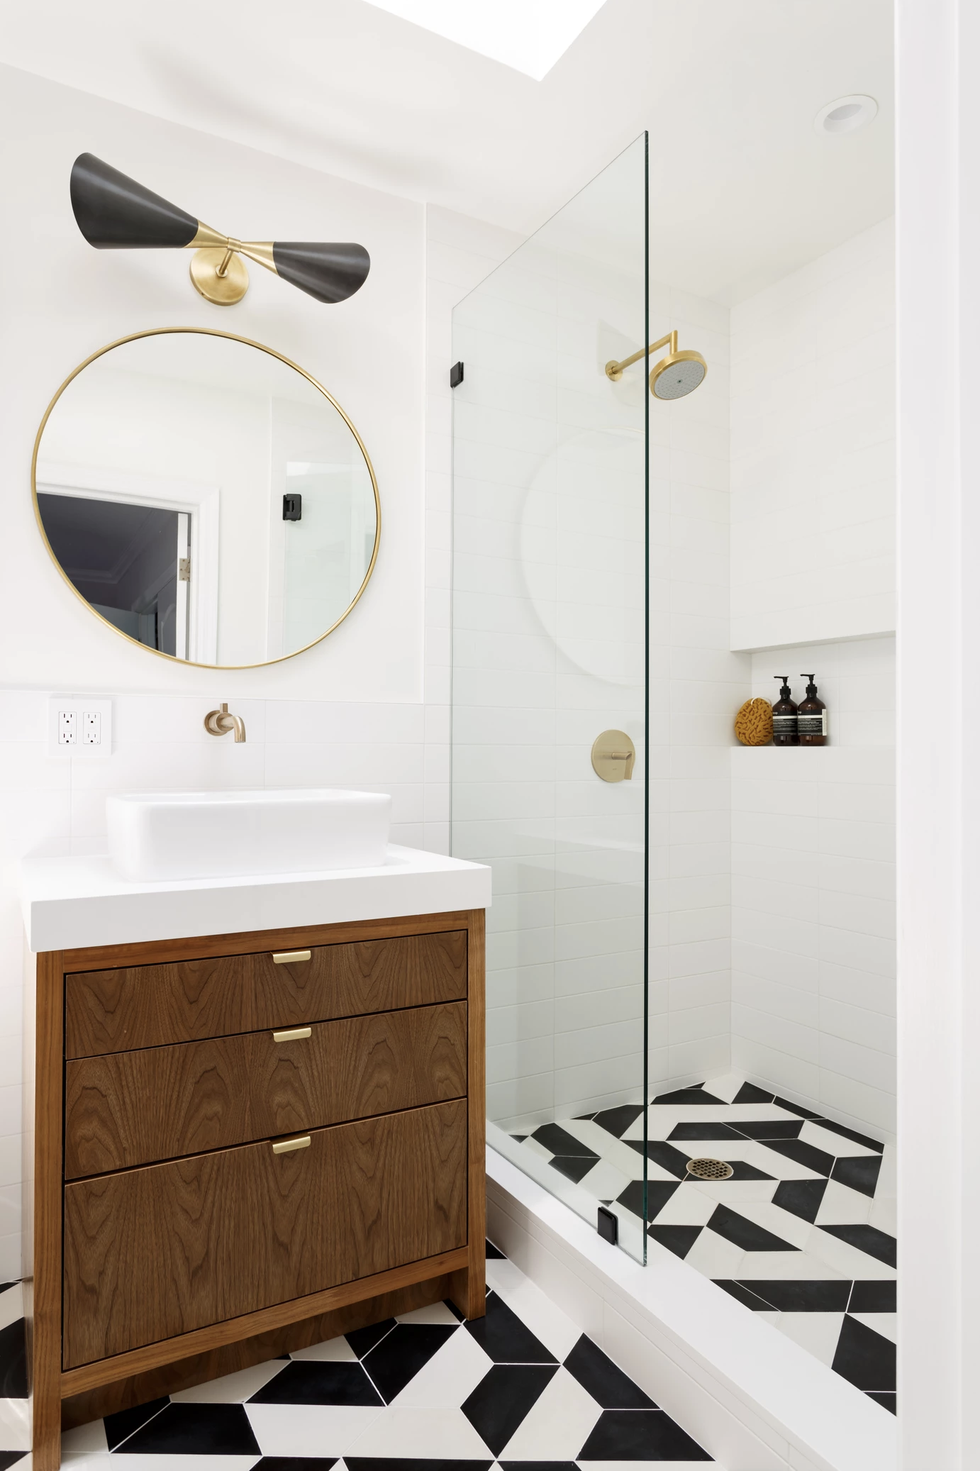 hình ảnh phòng tắm nhỏ màu trắng chủ đạo với gương tròn treo tường, đèn thắp sáng, vách kính phân tách với buồng tắm đứng